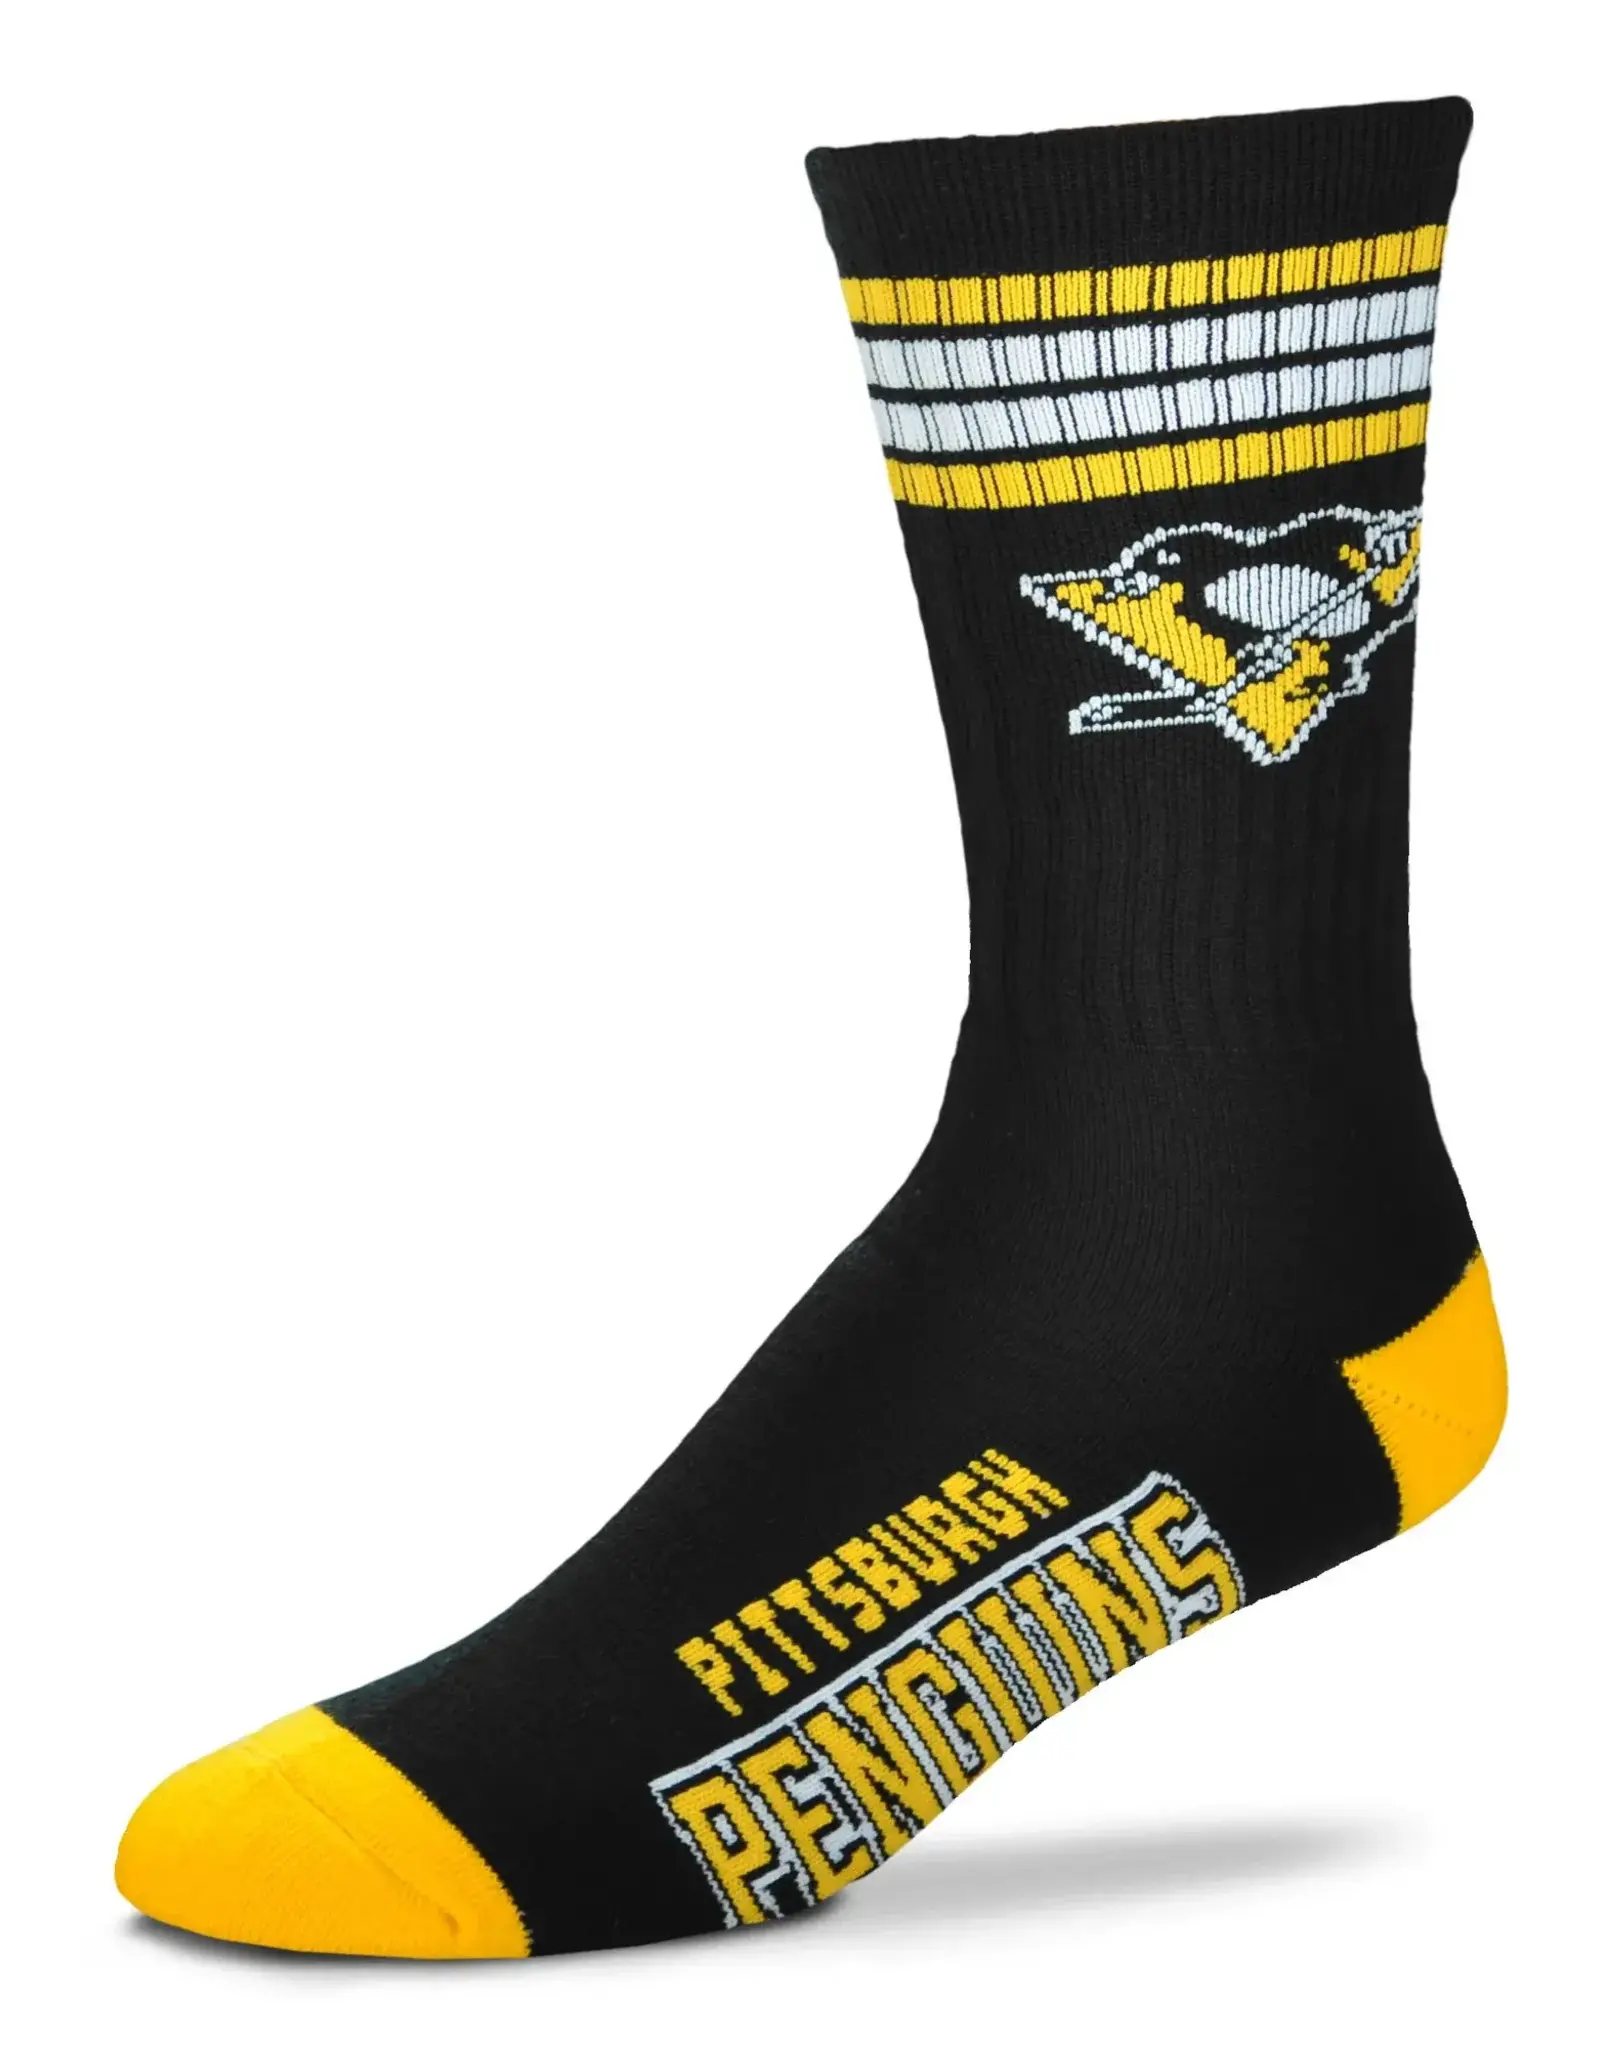 For Bare Feet Pittsburgh Penguins Youth Deuce Socks